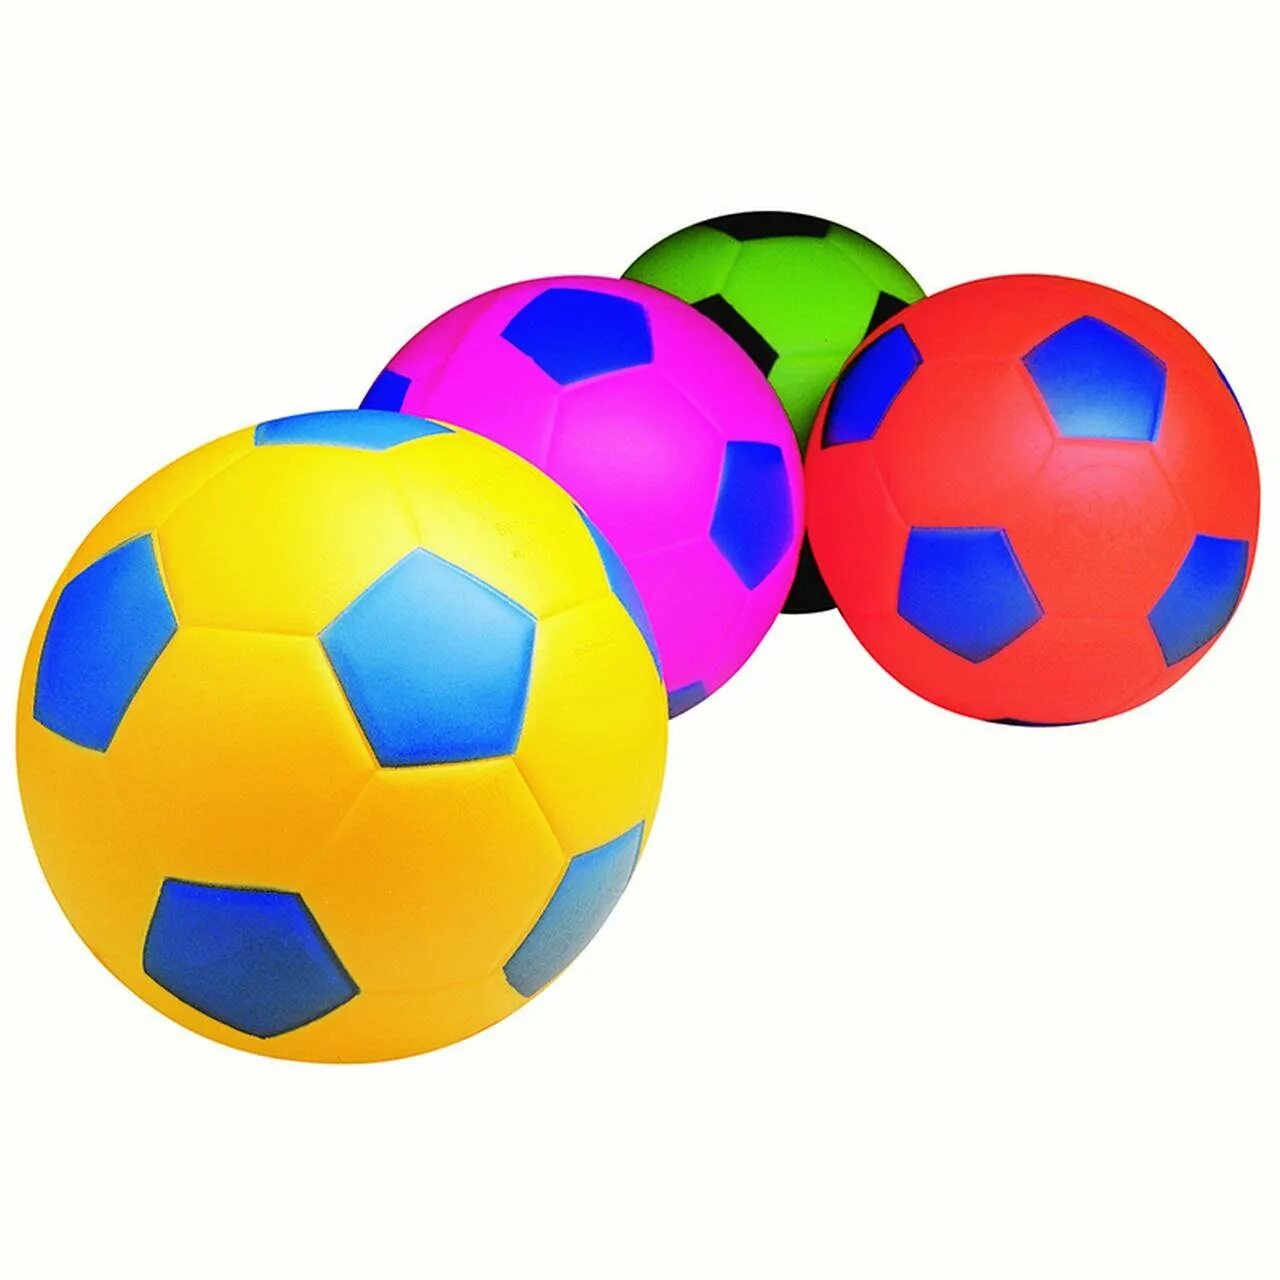 Картинка мяча для детей на прозрачном фоне. Мячики для детей. Мячи детские. Мяч для дошкольников. Мячик на белом фоне.